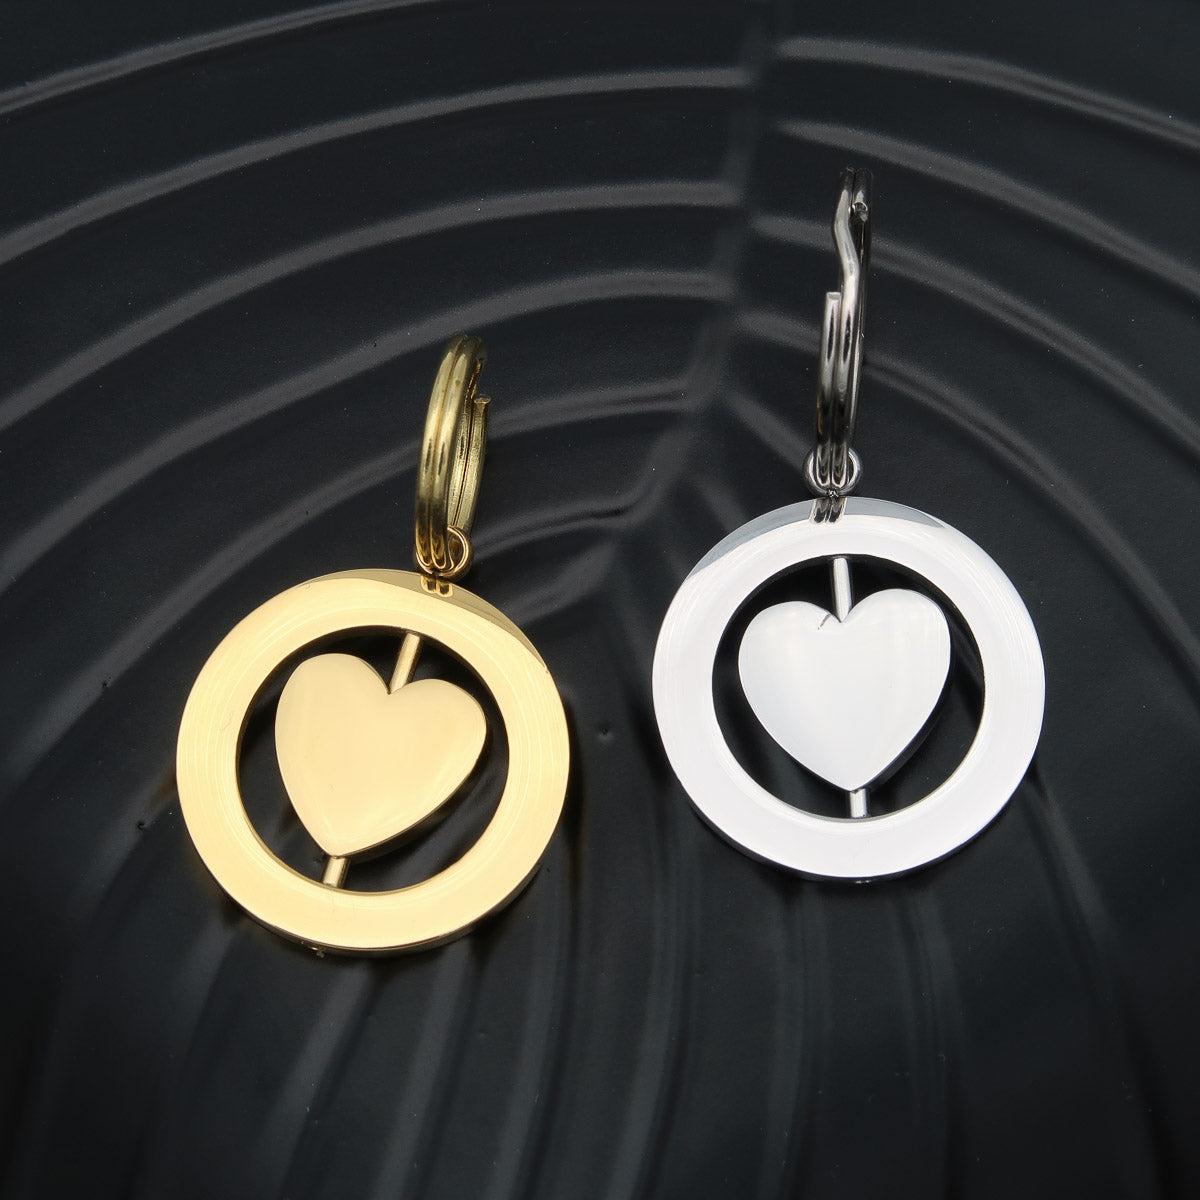 Schlüsselanhänger "Spinning heart" mit Gravur auf beiden Seiten